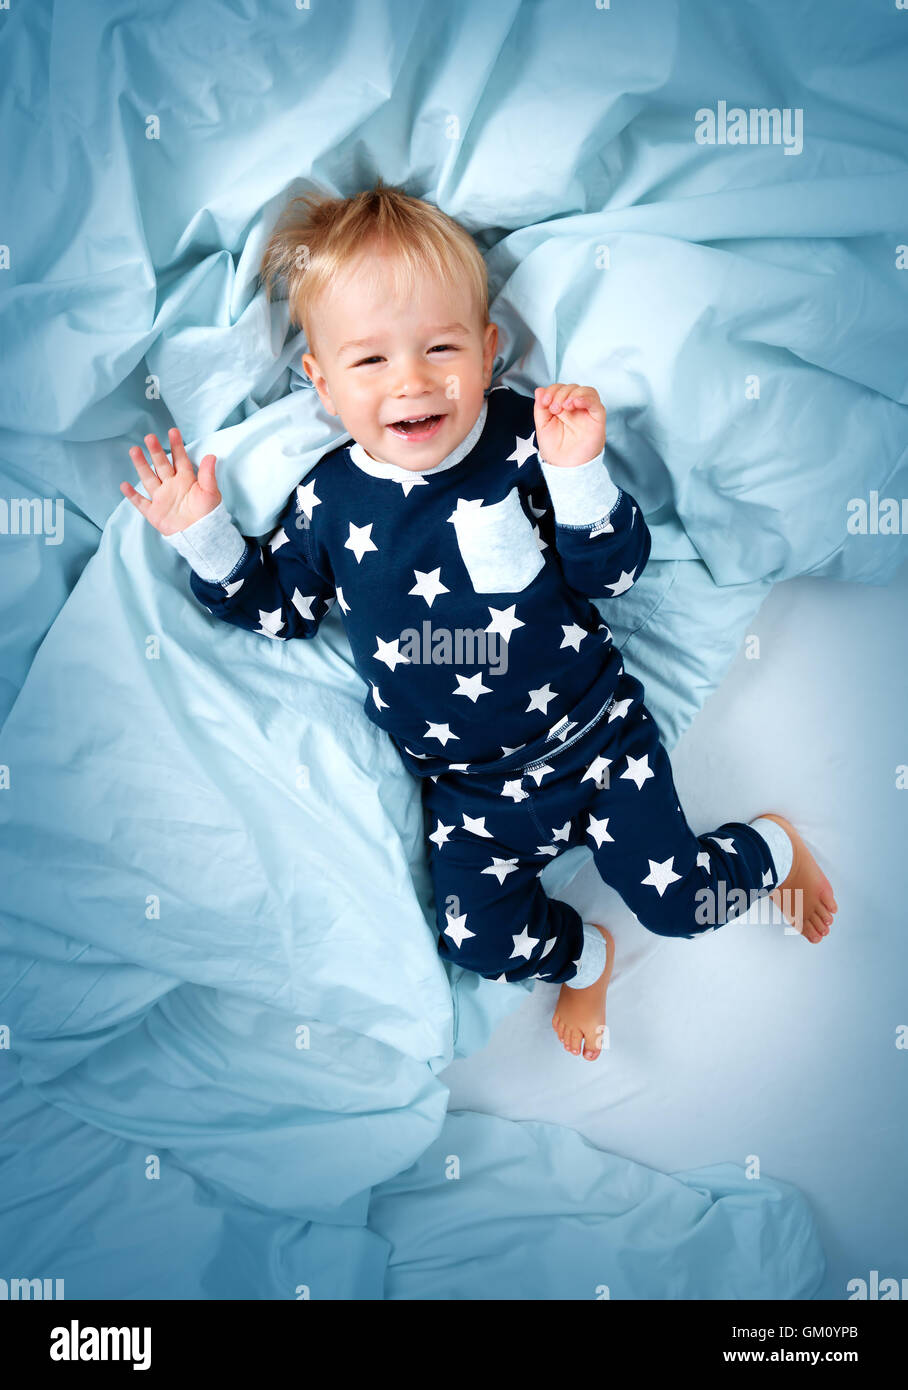 Bebé de Un año de edad en la cama Foto de stock